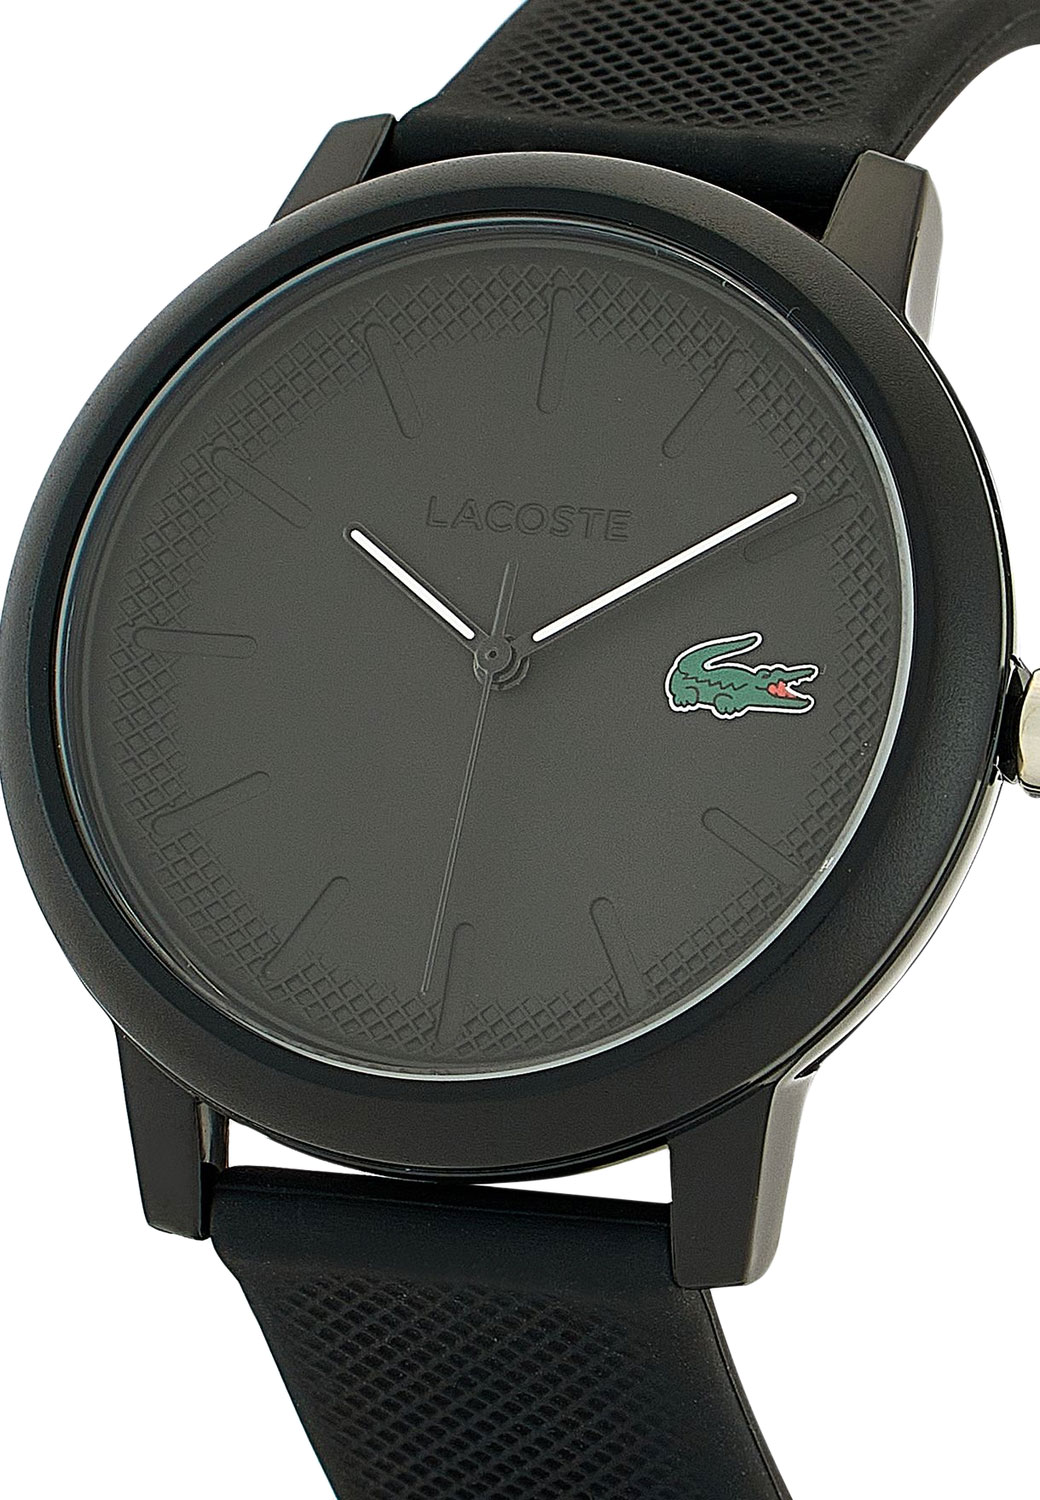 Наручные часы Lacoste 2070021 — купить в интернет-магазине AllTime.ru по лучшей цене, фото, характеристики, описание